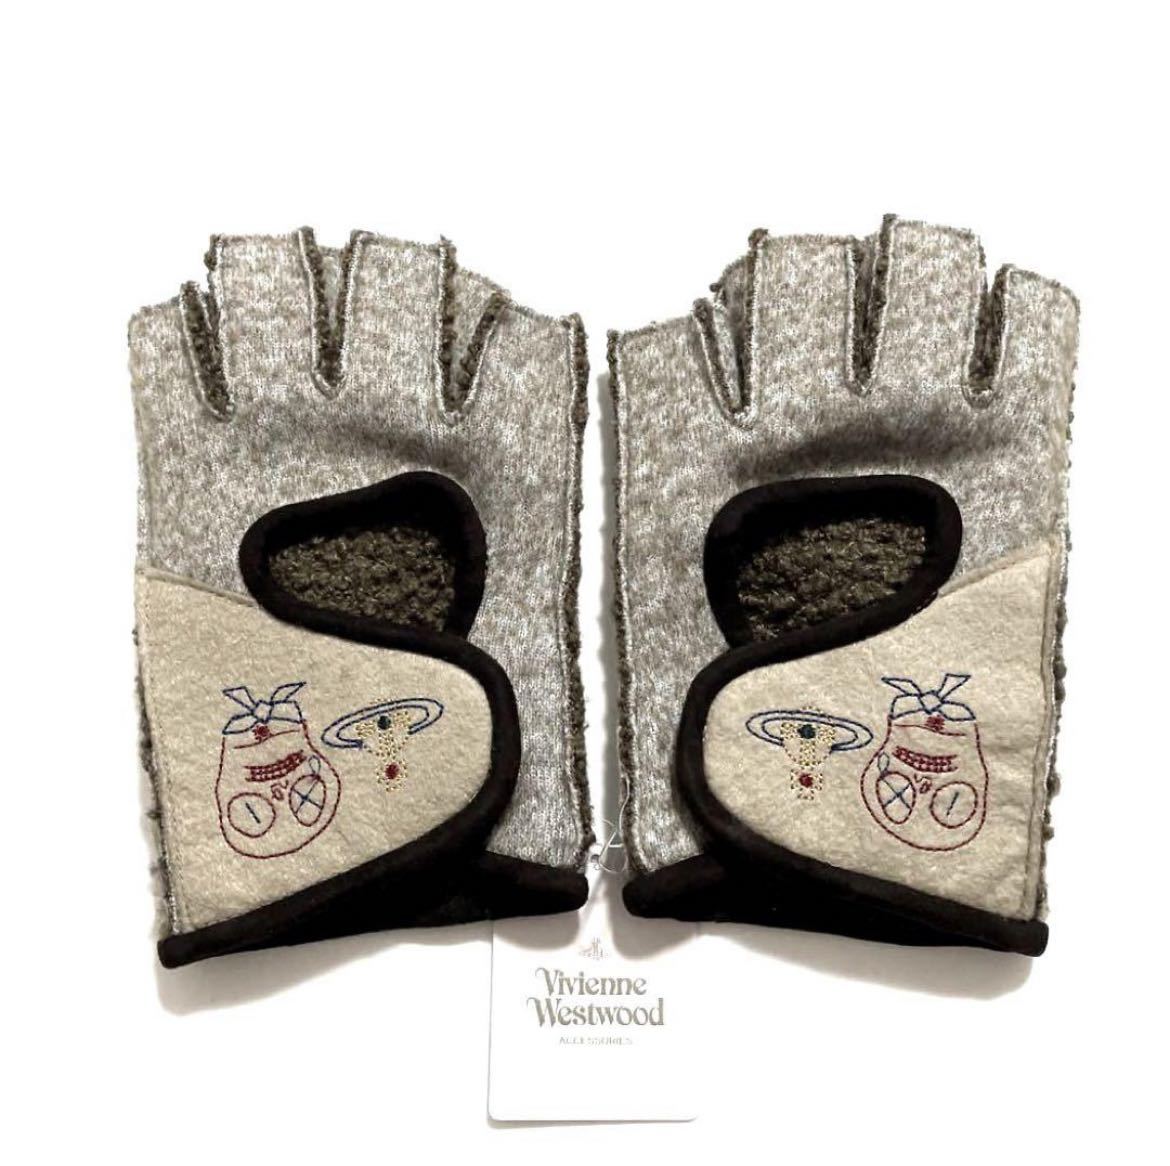 新品【 Vivienne Westwood ヴィヴィアン ウエストウッド 】 指なし手袋 指あき スマホ対応 フィンガーレス ブランド 手袋 オーブ ブラウン